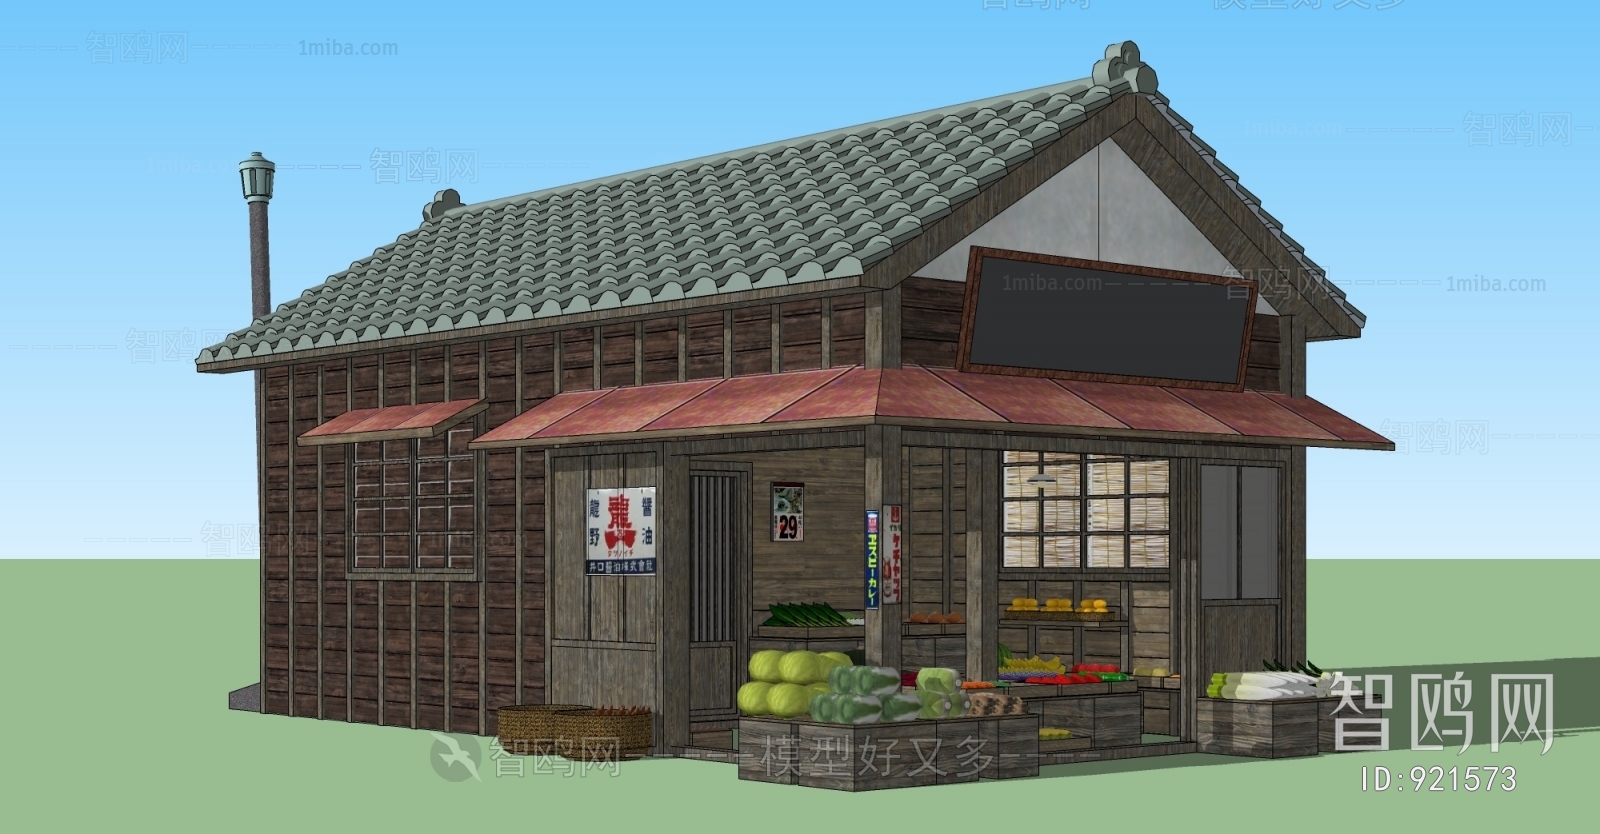 日式小木屋、水果店、小卖铺